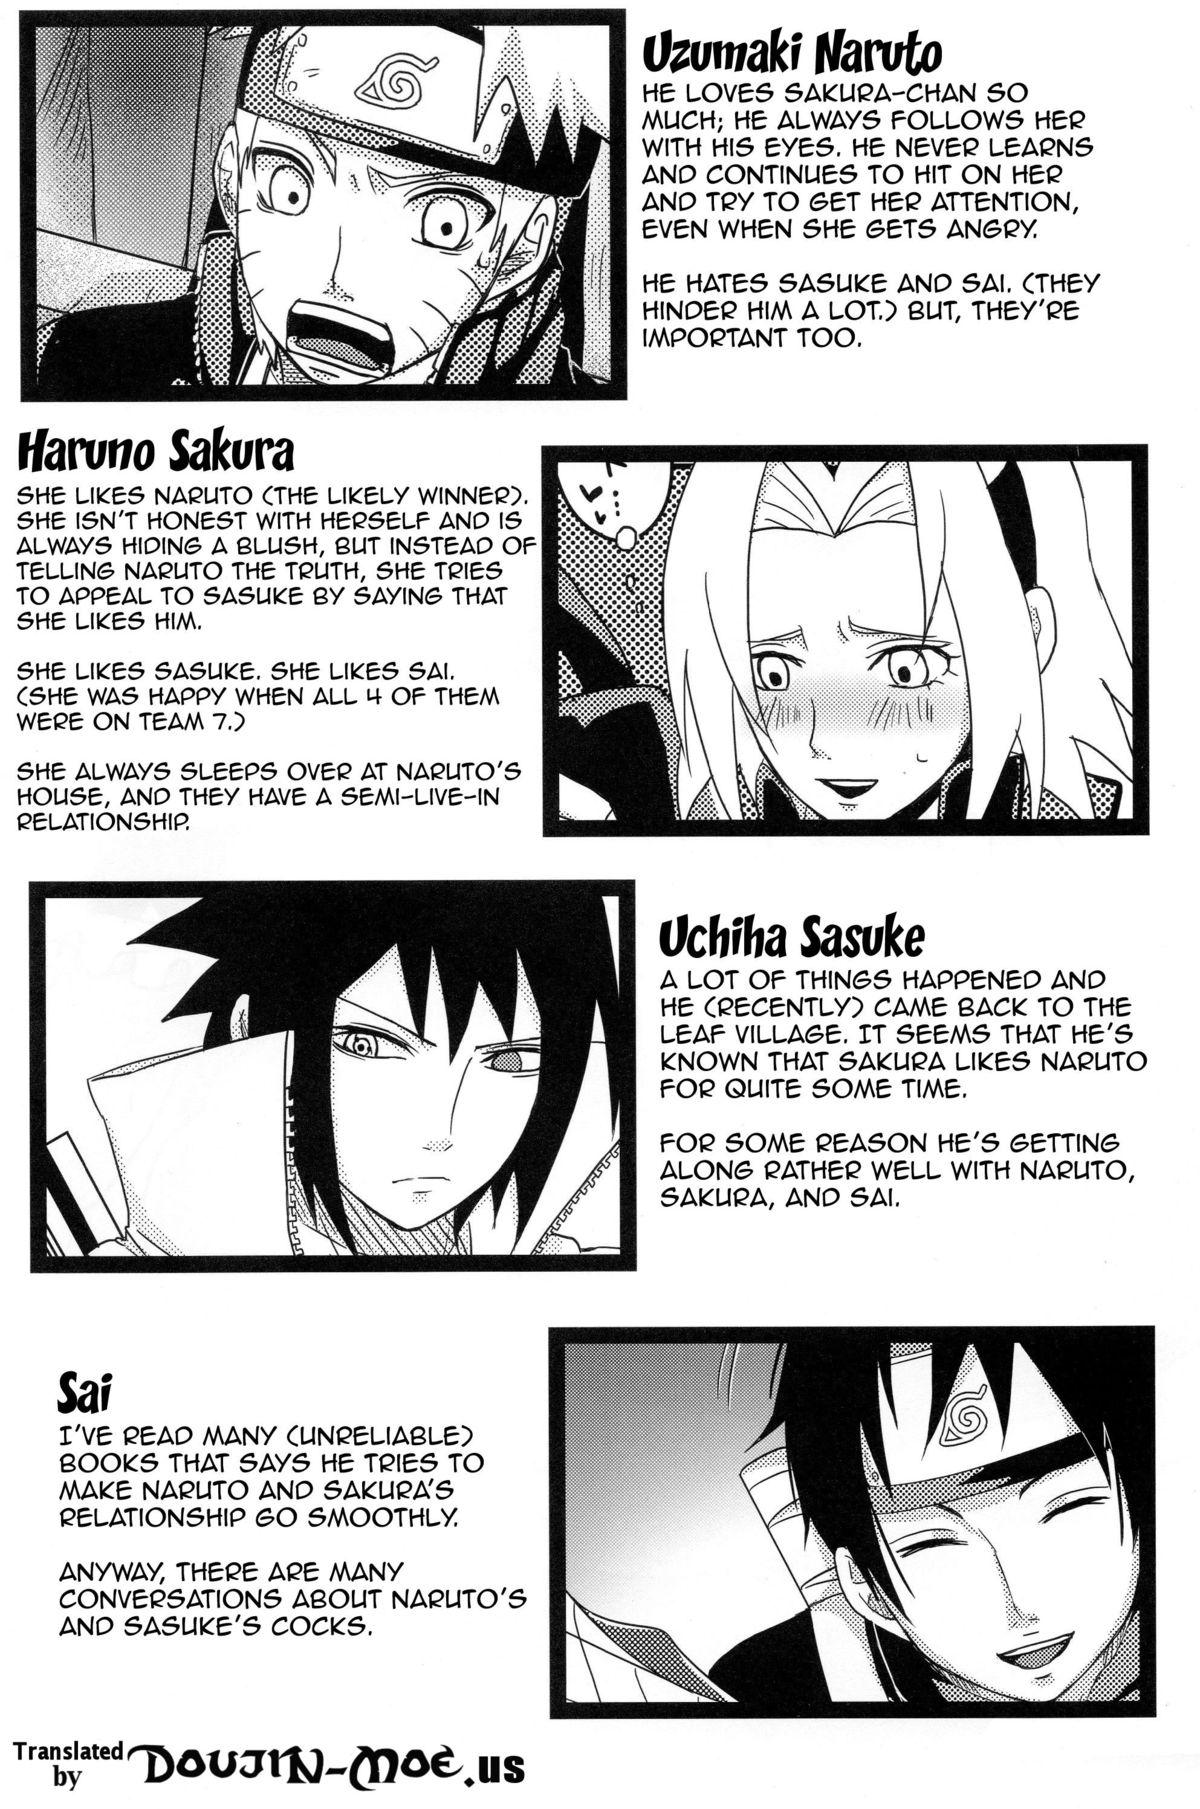 Sucks Sato Ichiban no! | Best in the Village! - Naruto Deepthroat - Page 3